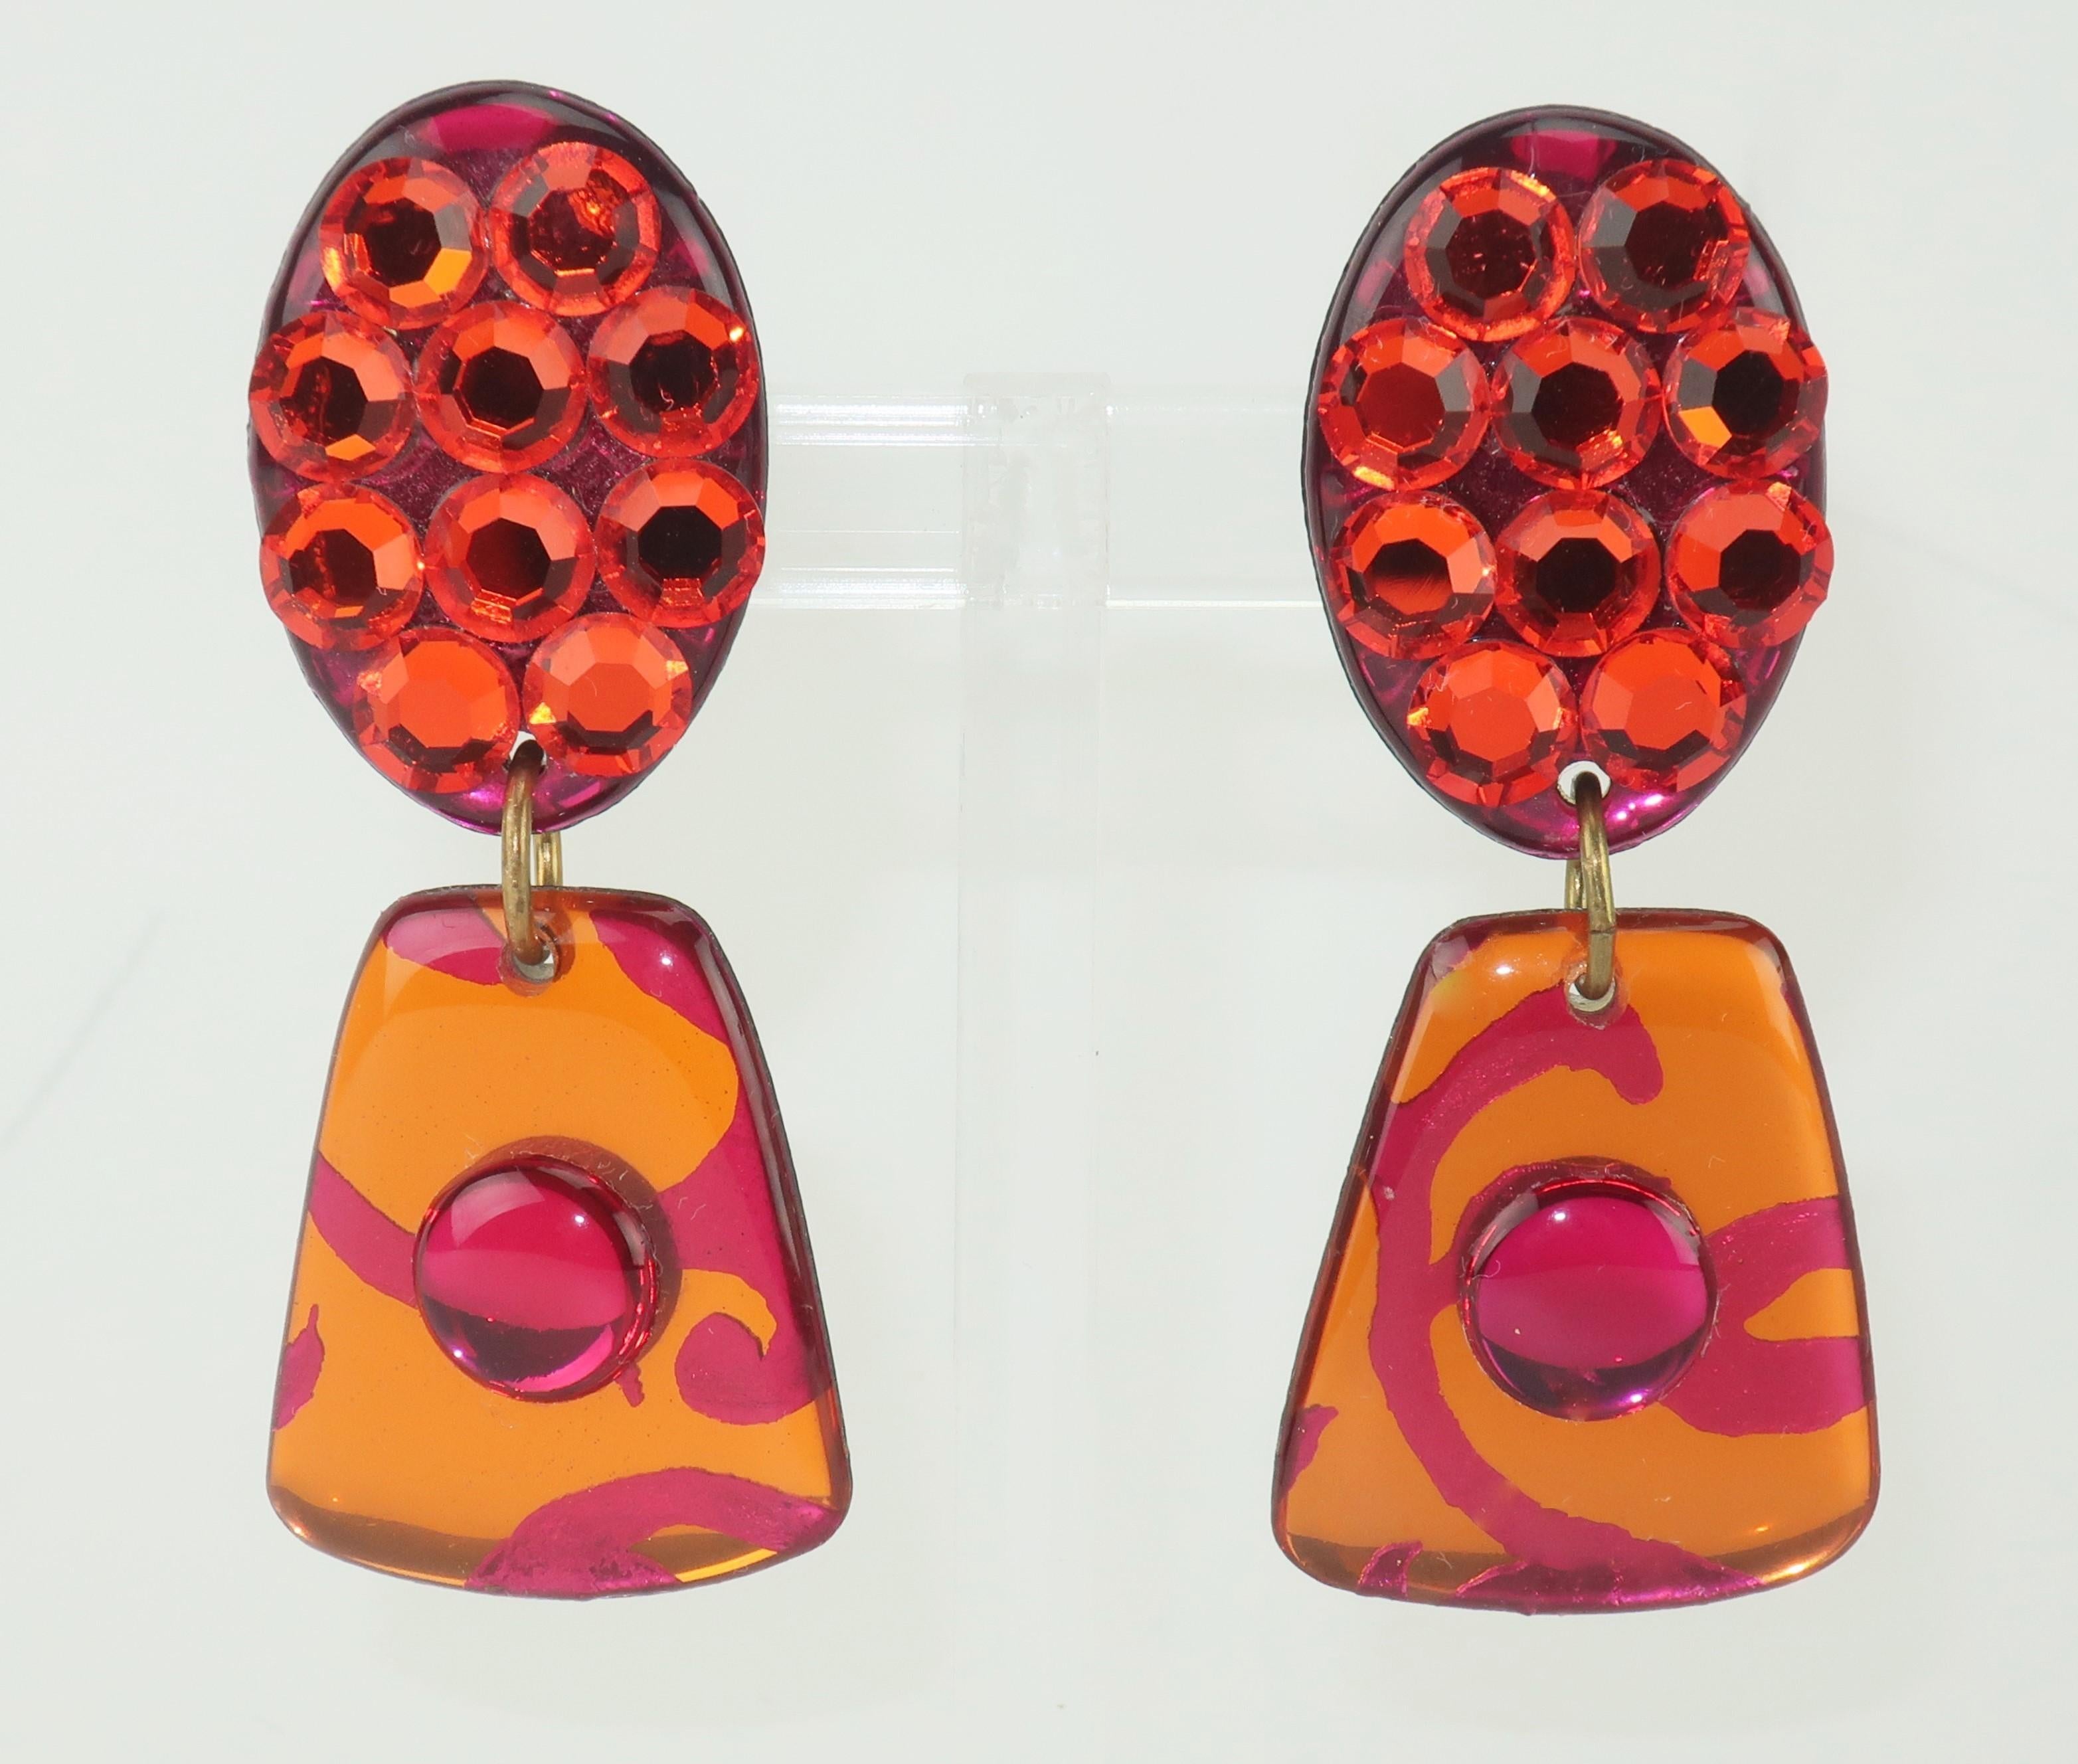 Diese Ohrringe in rosafarbenem und orangefarbenem Pflasterkristall aus den 1980er Jahren sind ein frivoler und lustiger Hingucker, der für einen Hauch von Farbe und Glanz sorgt.  Keine Herstellermarke.
CONDIT
Guter bis mittelmäßiger Zustand mit